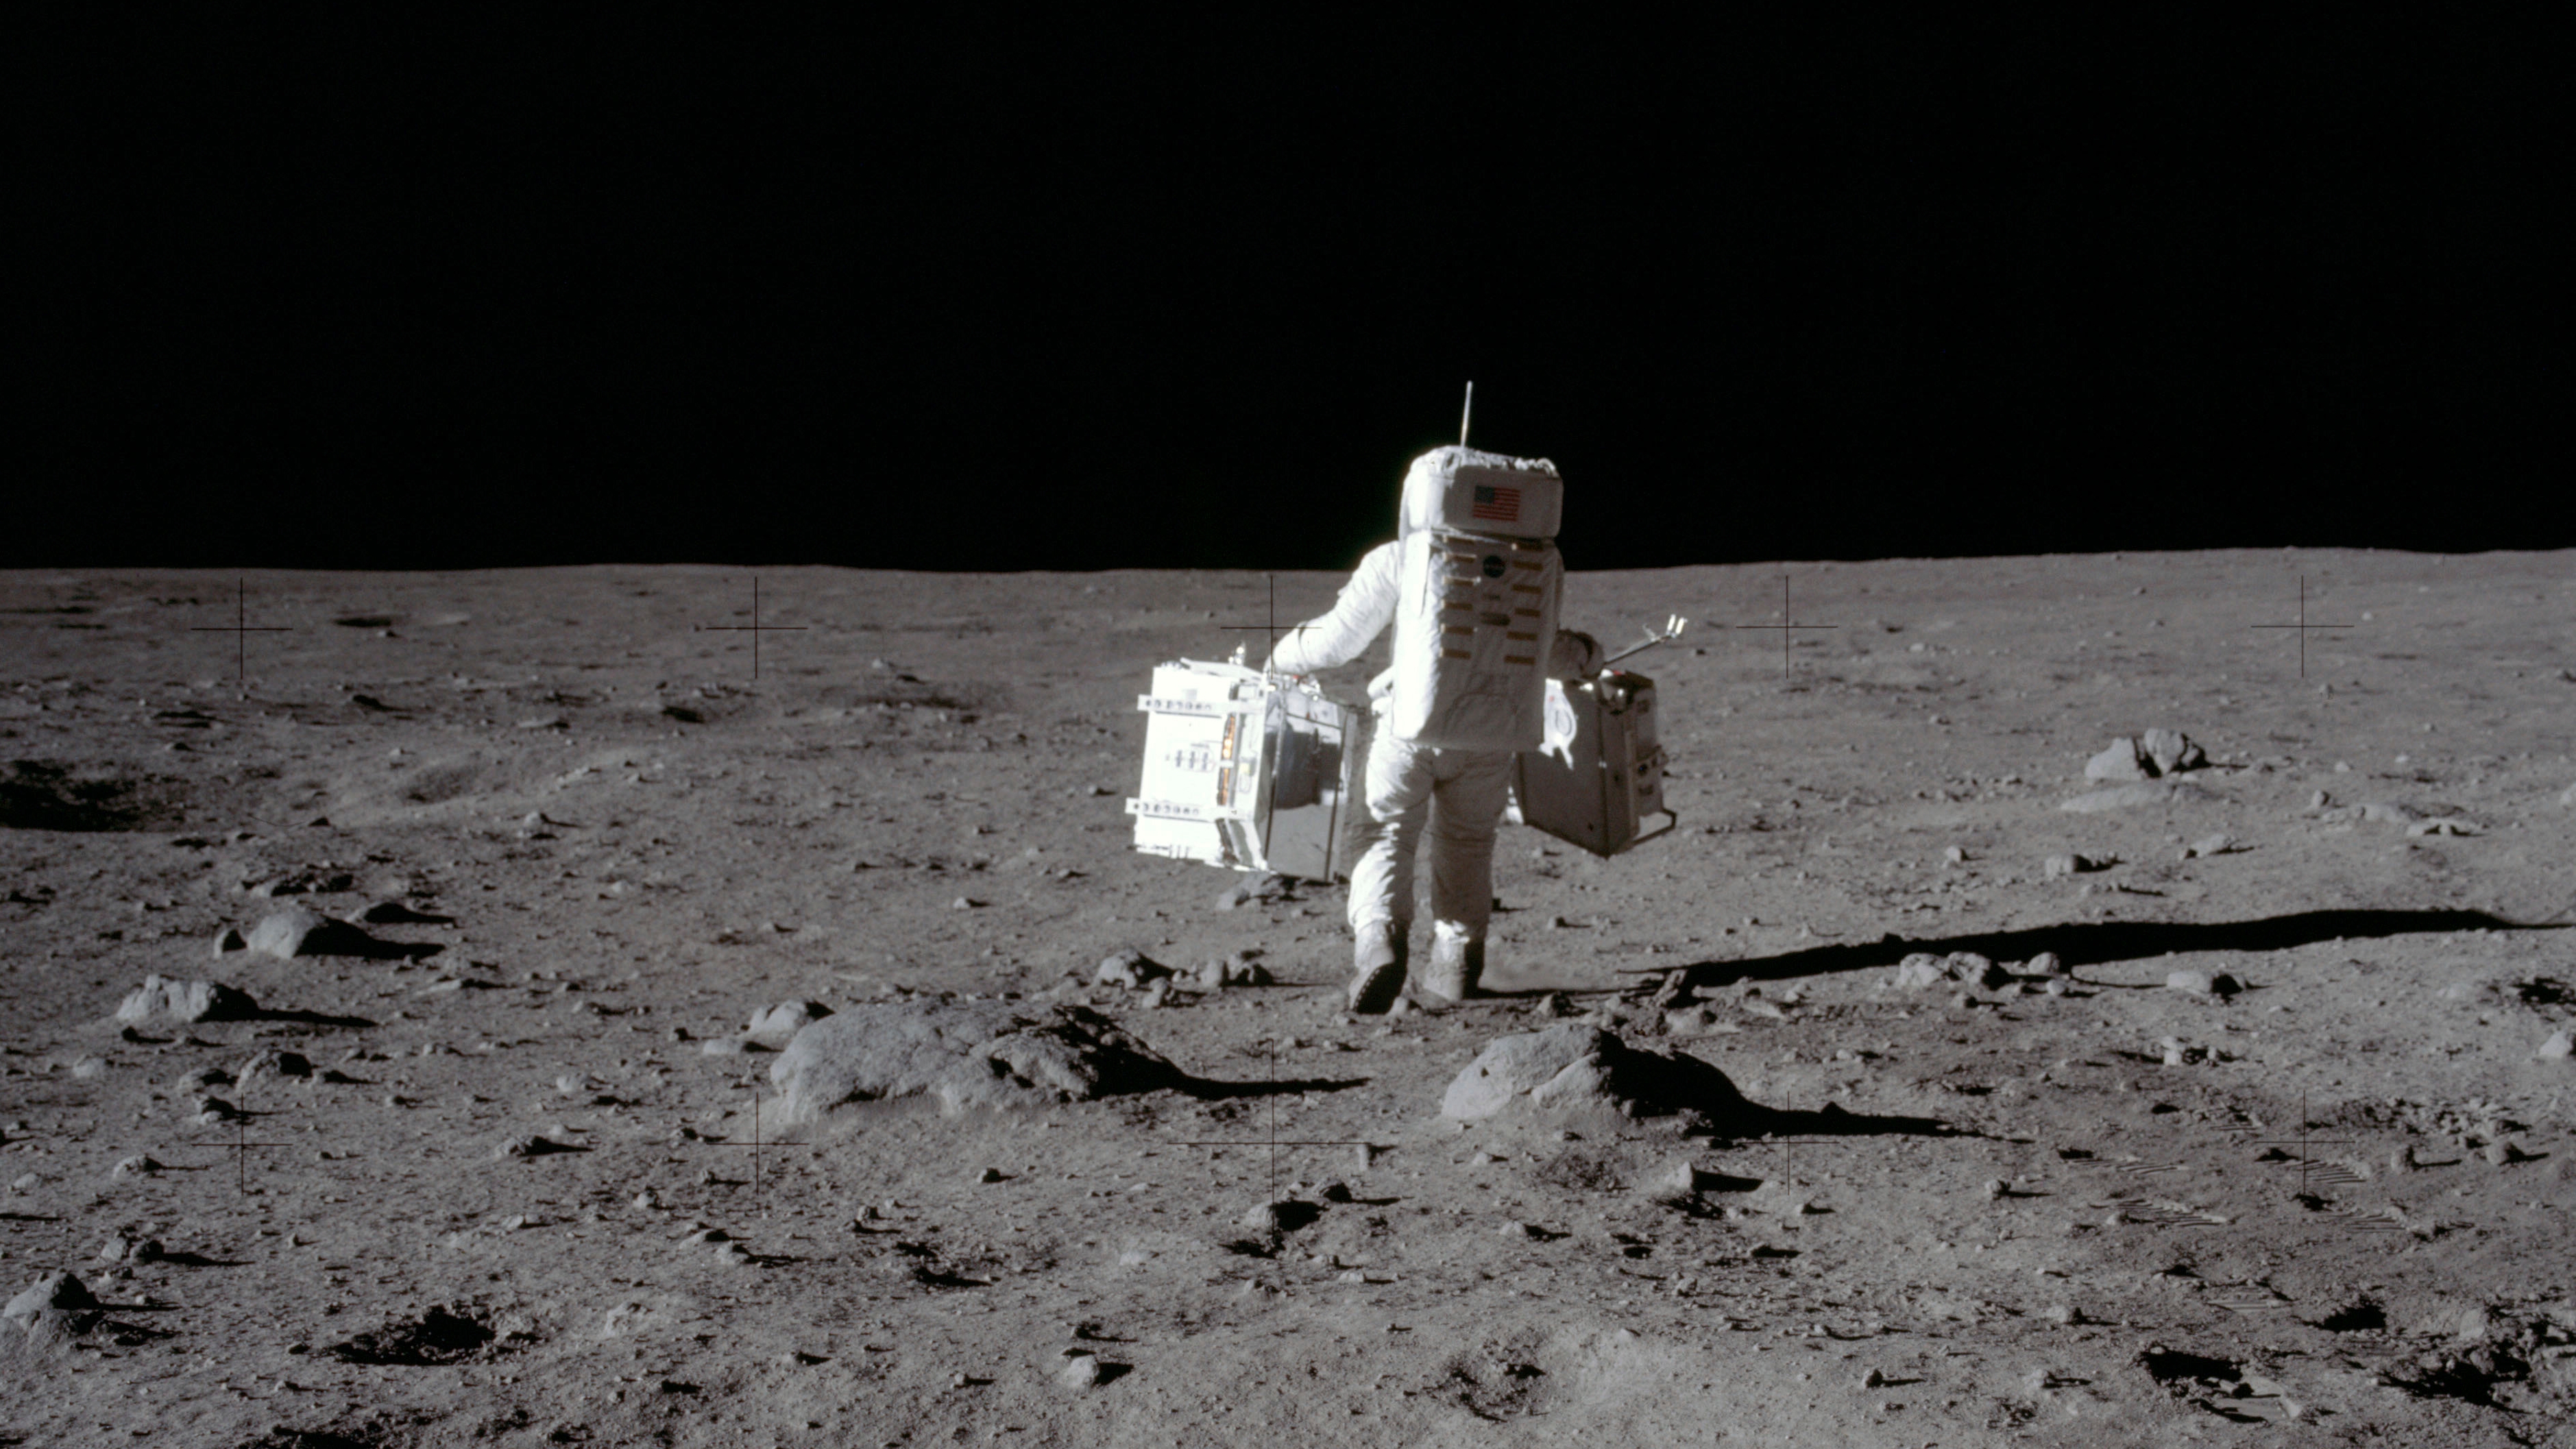 La NASA prevé lanzar misiones tripuladas a la Luna esta misma década, pero los planes se demoran (Neil Armstrong/NASA vía AP)